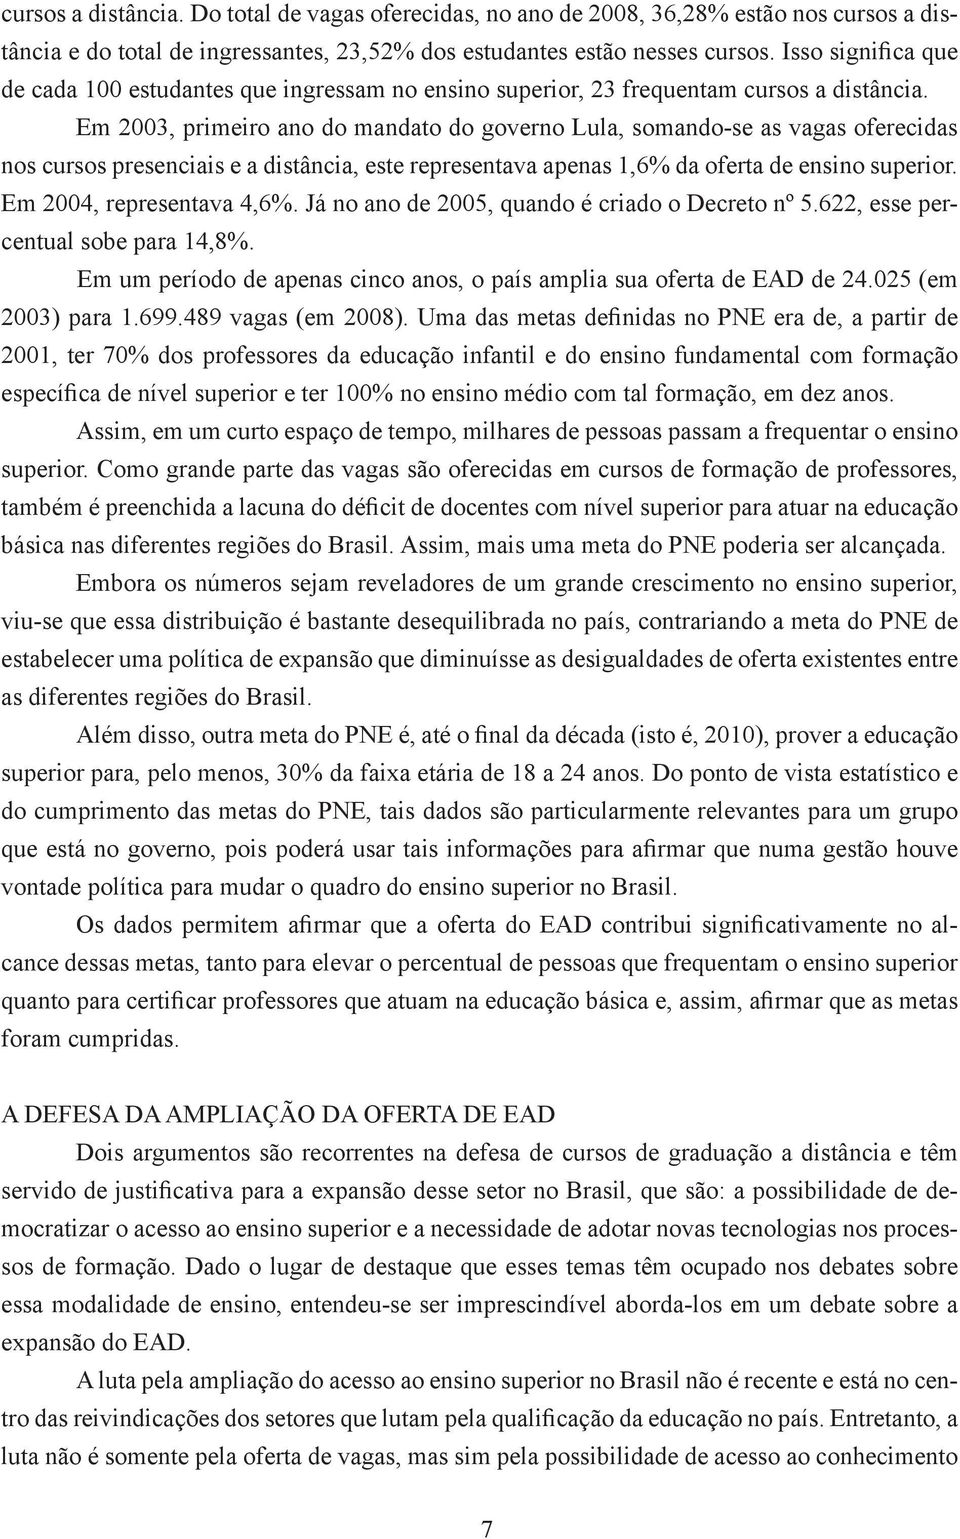 Em 2003, primeiro ano do mandato do governo Lula, somando-se as vagas oferecidas nos cursos presenciais e a distância, este representava apenas 1,6% da oferta de ensino superior.